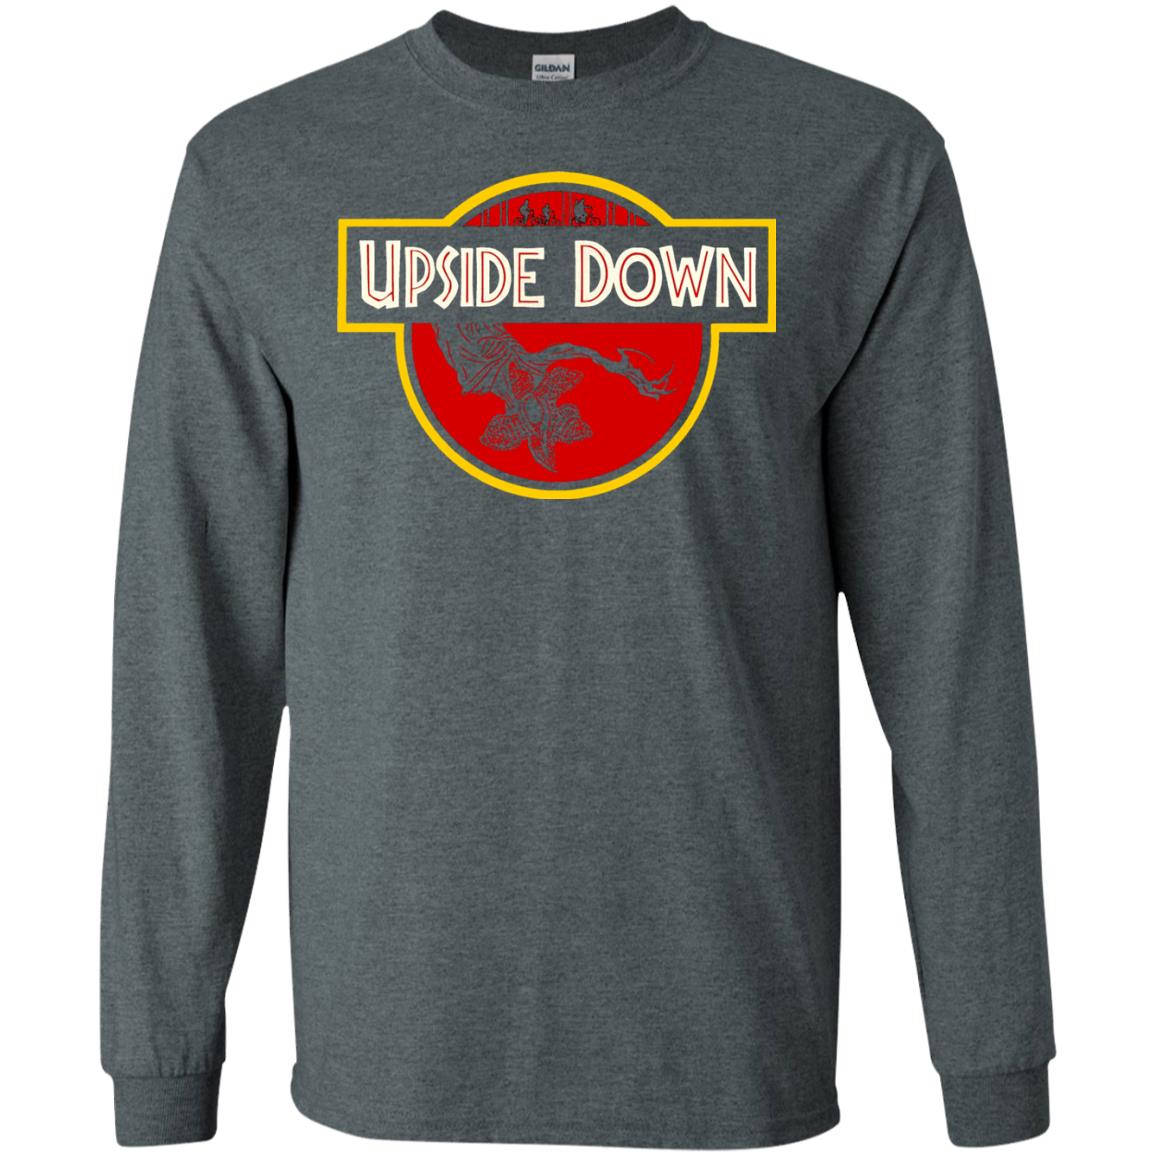 Upside Down T-Shirt - 10% Off - FavorMerch